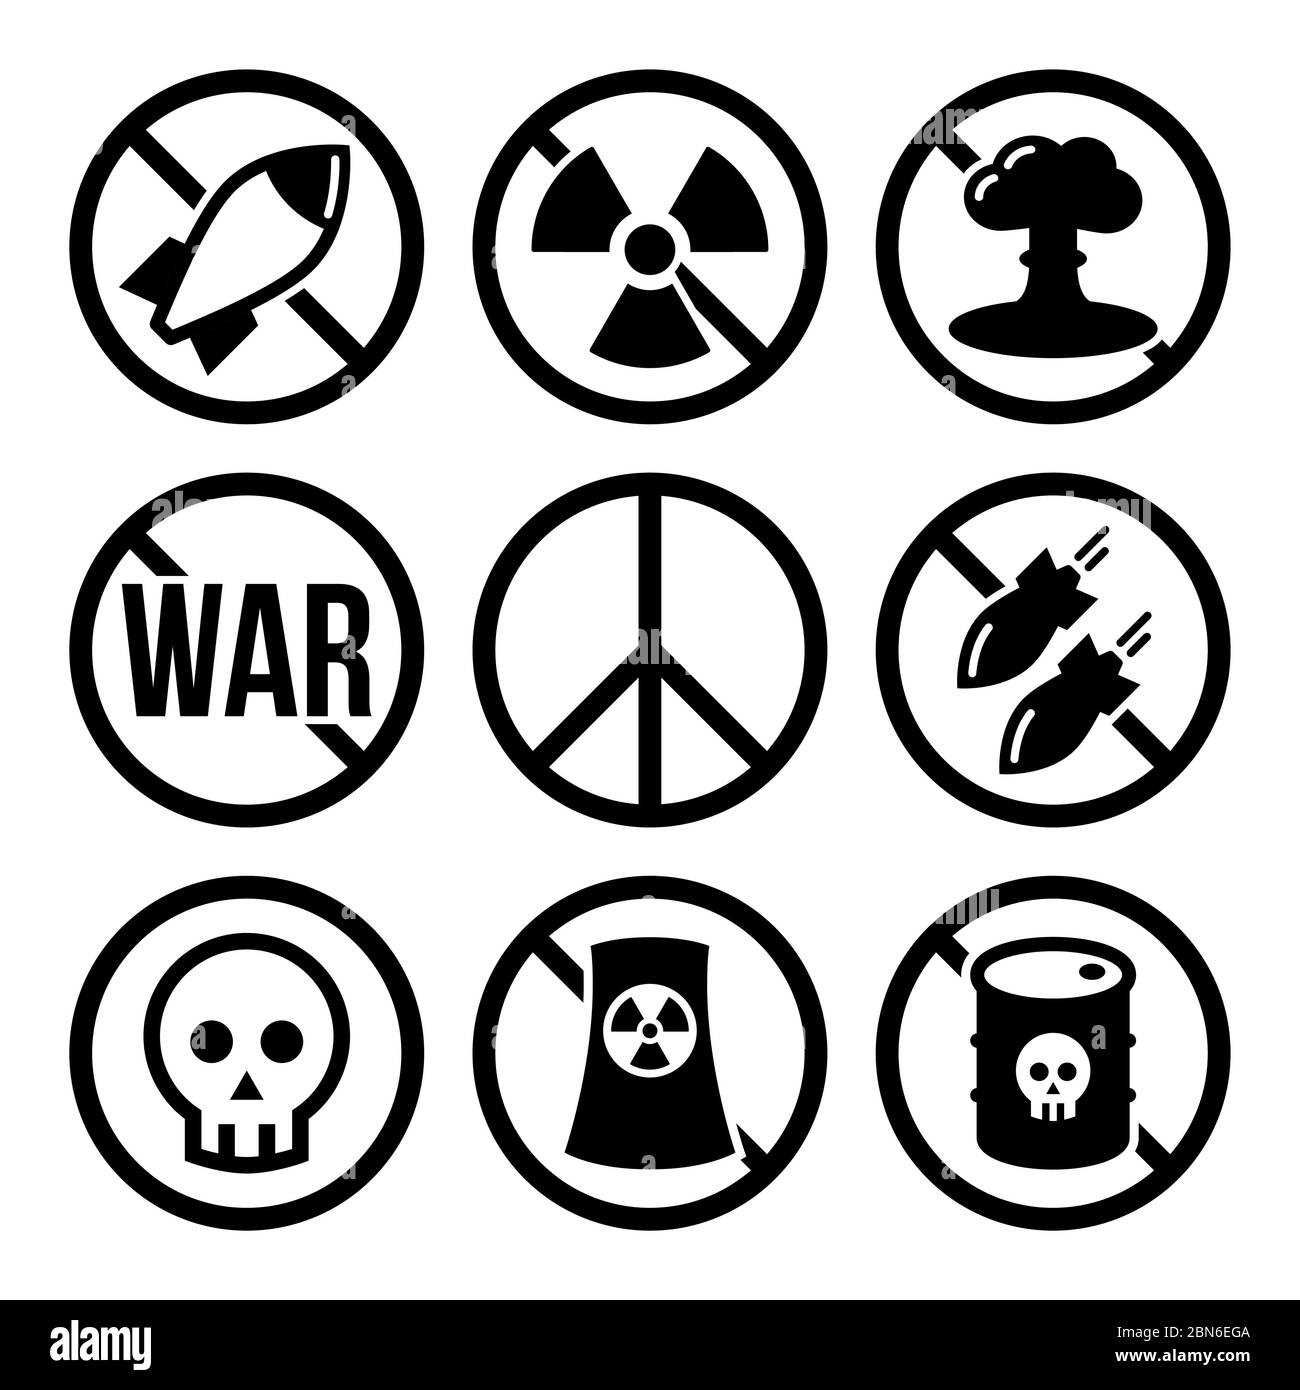 Keine Atomwaffe, kein Krieg, keine Bomben Vektor Warnzeichen - Antikrieg, Friedensbewegung Konzept Keine Atomkraftwerke, keine Kriegsvektor Warnzeichen des Stock Vektor